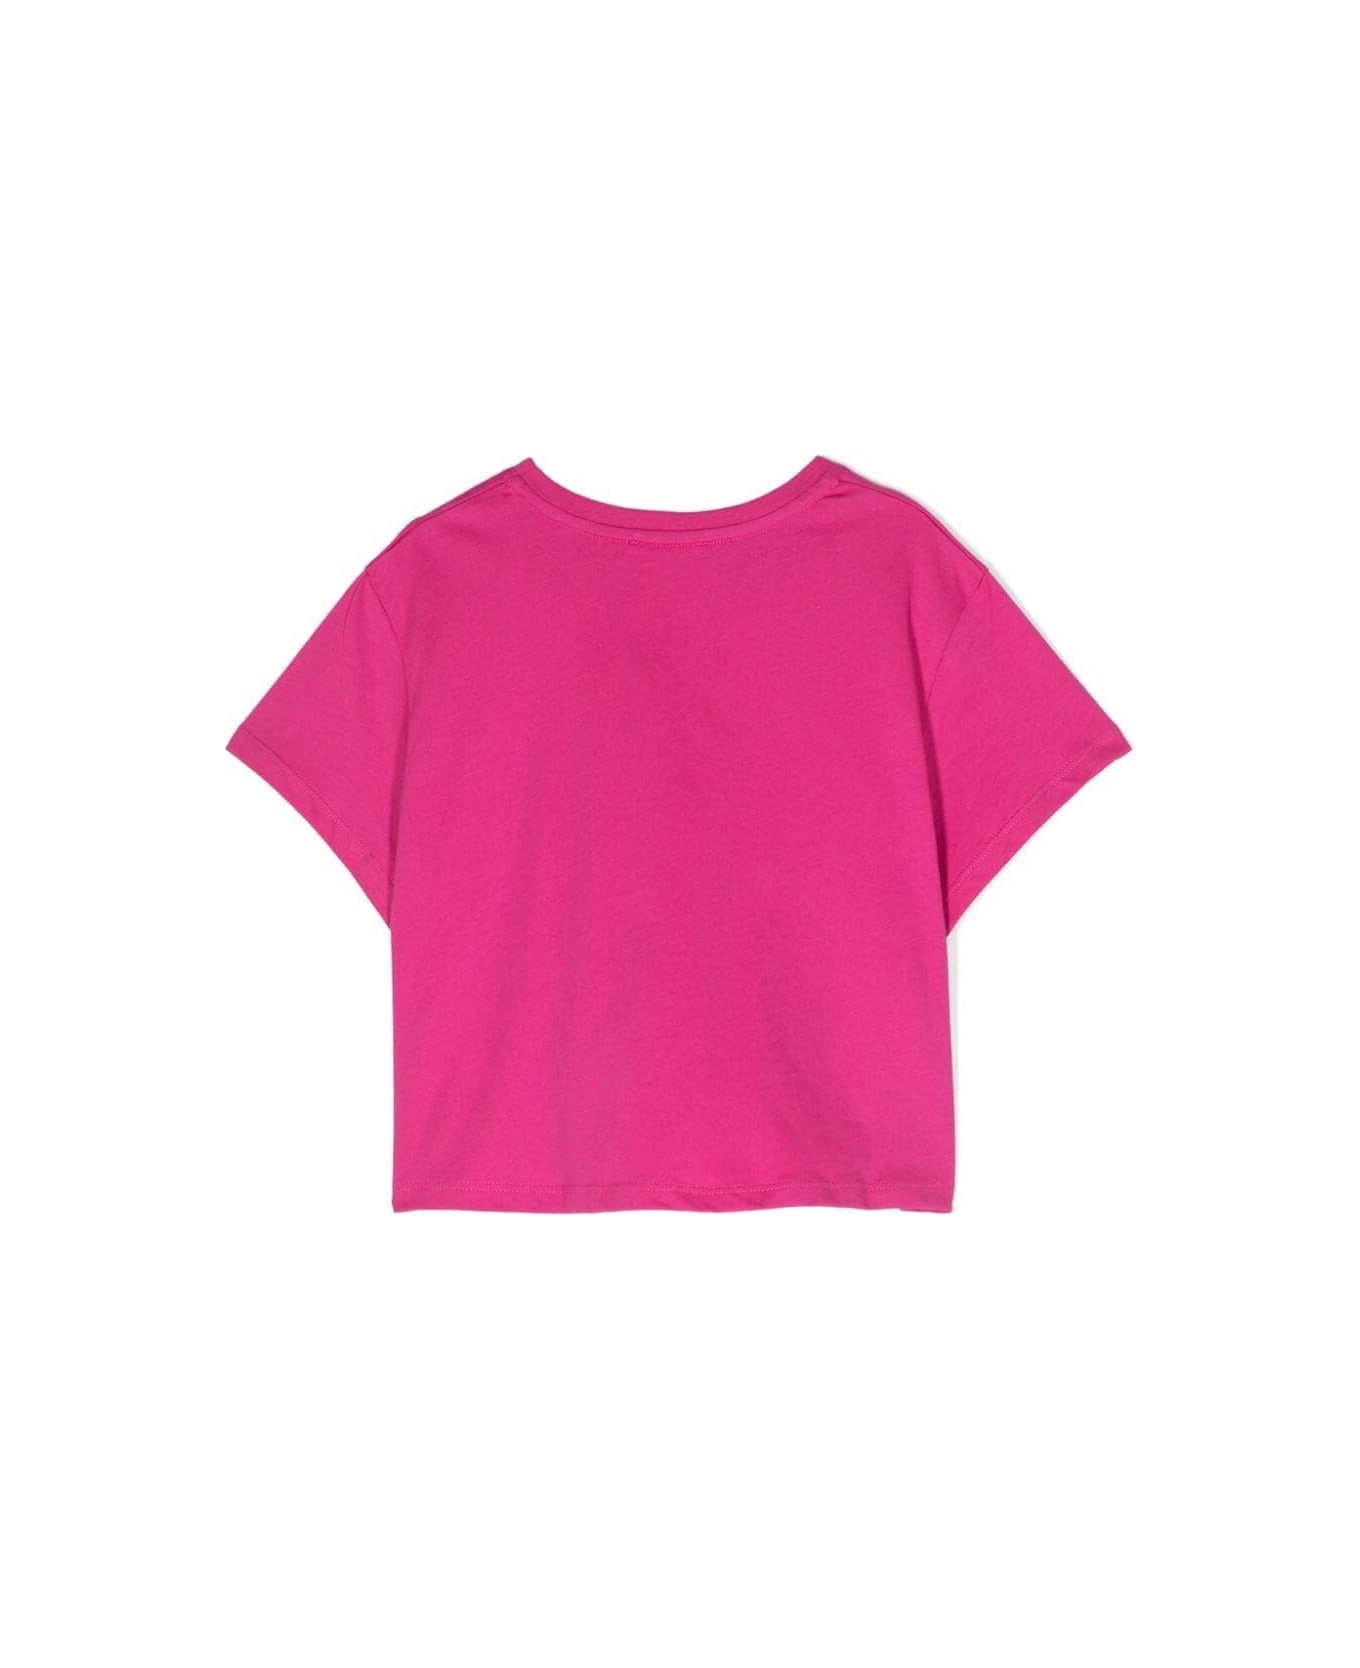 Chloé Short Sleeves T-shirt - L Pink